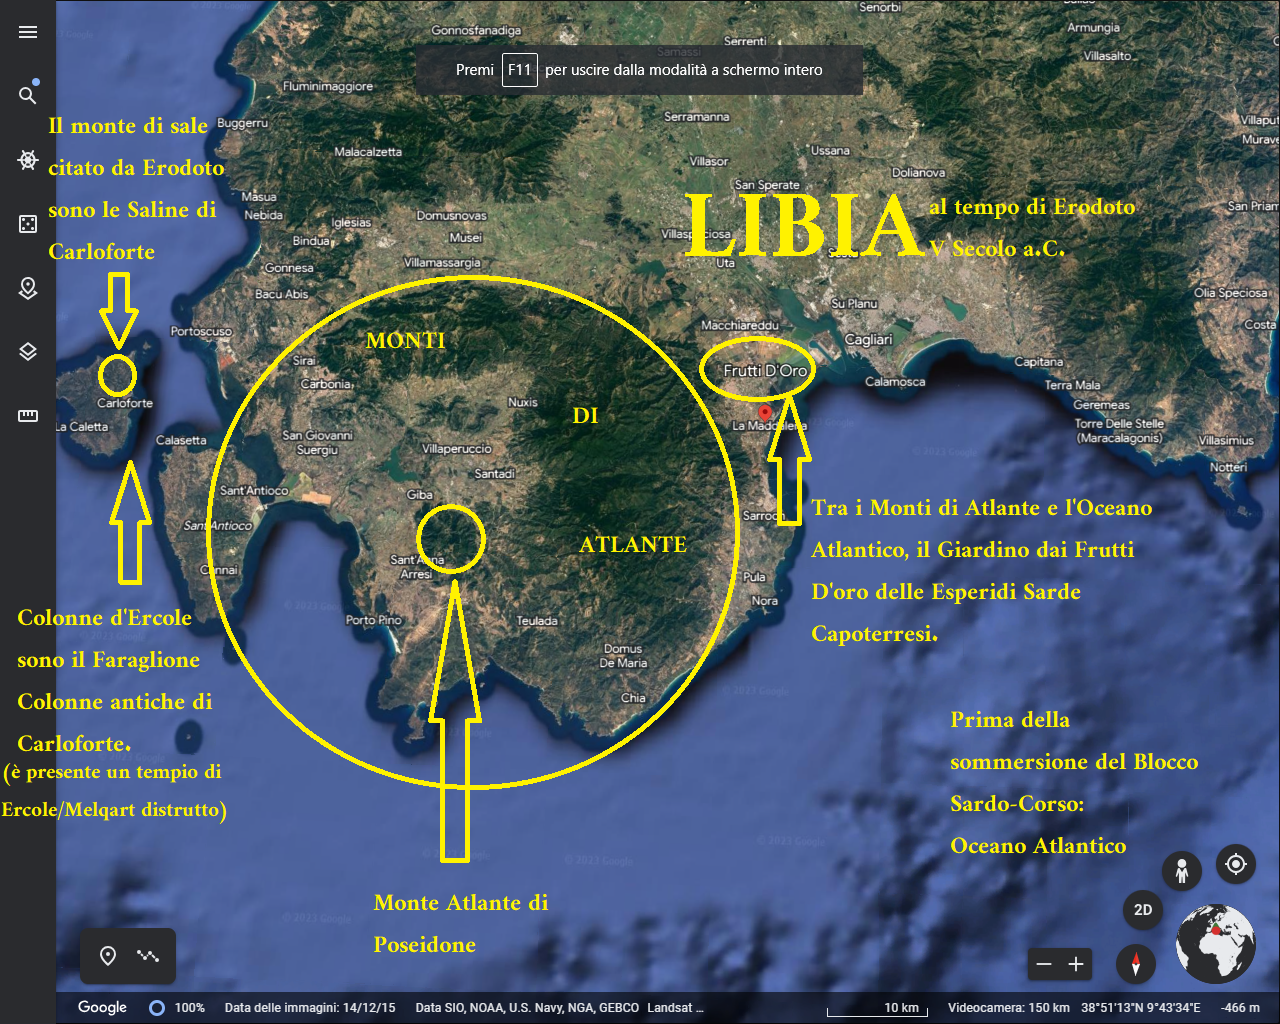 अब तक हेरोडोथियन लीबिया की मानचित्रण गलत रहा है: लीबिया कैग्लियारी प्रांत है